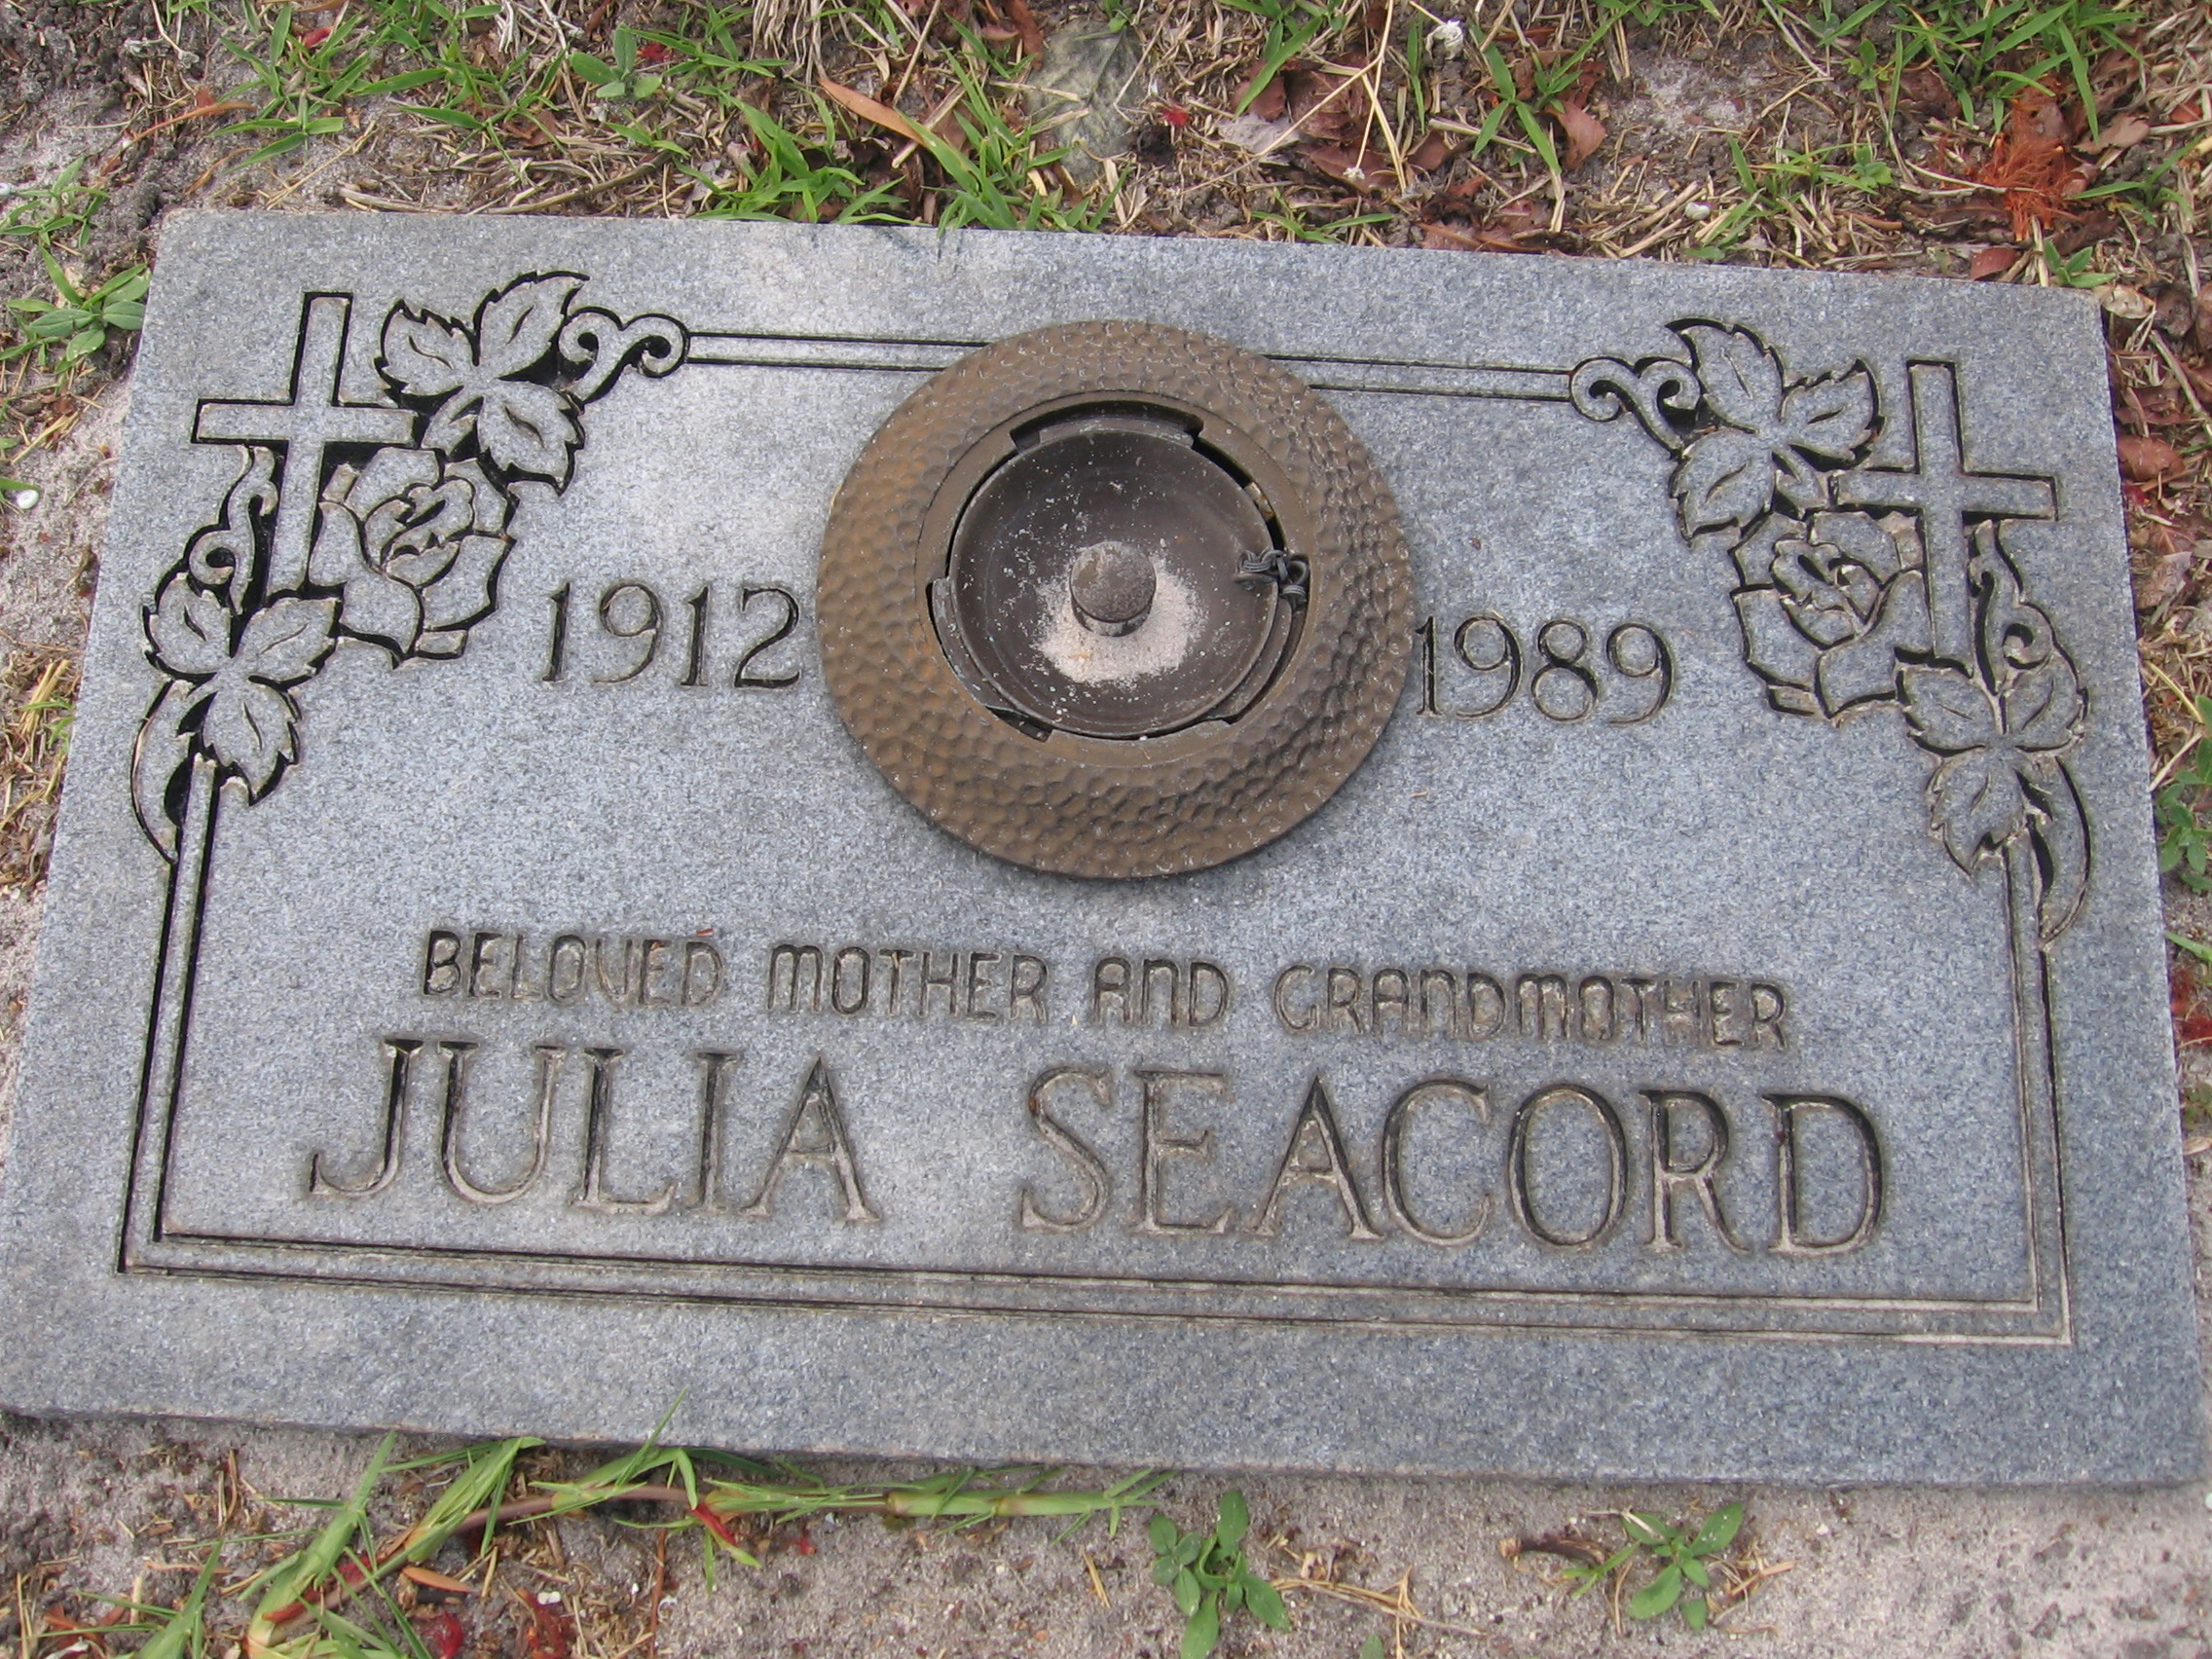 Julia Seacord